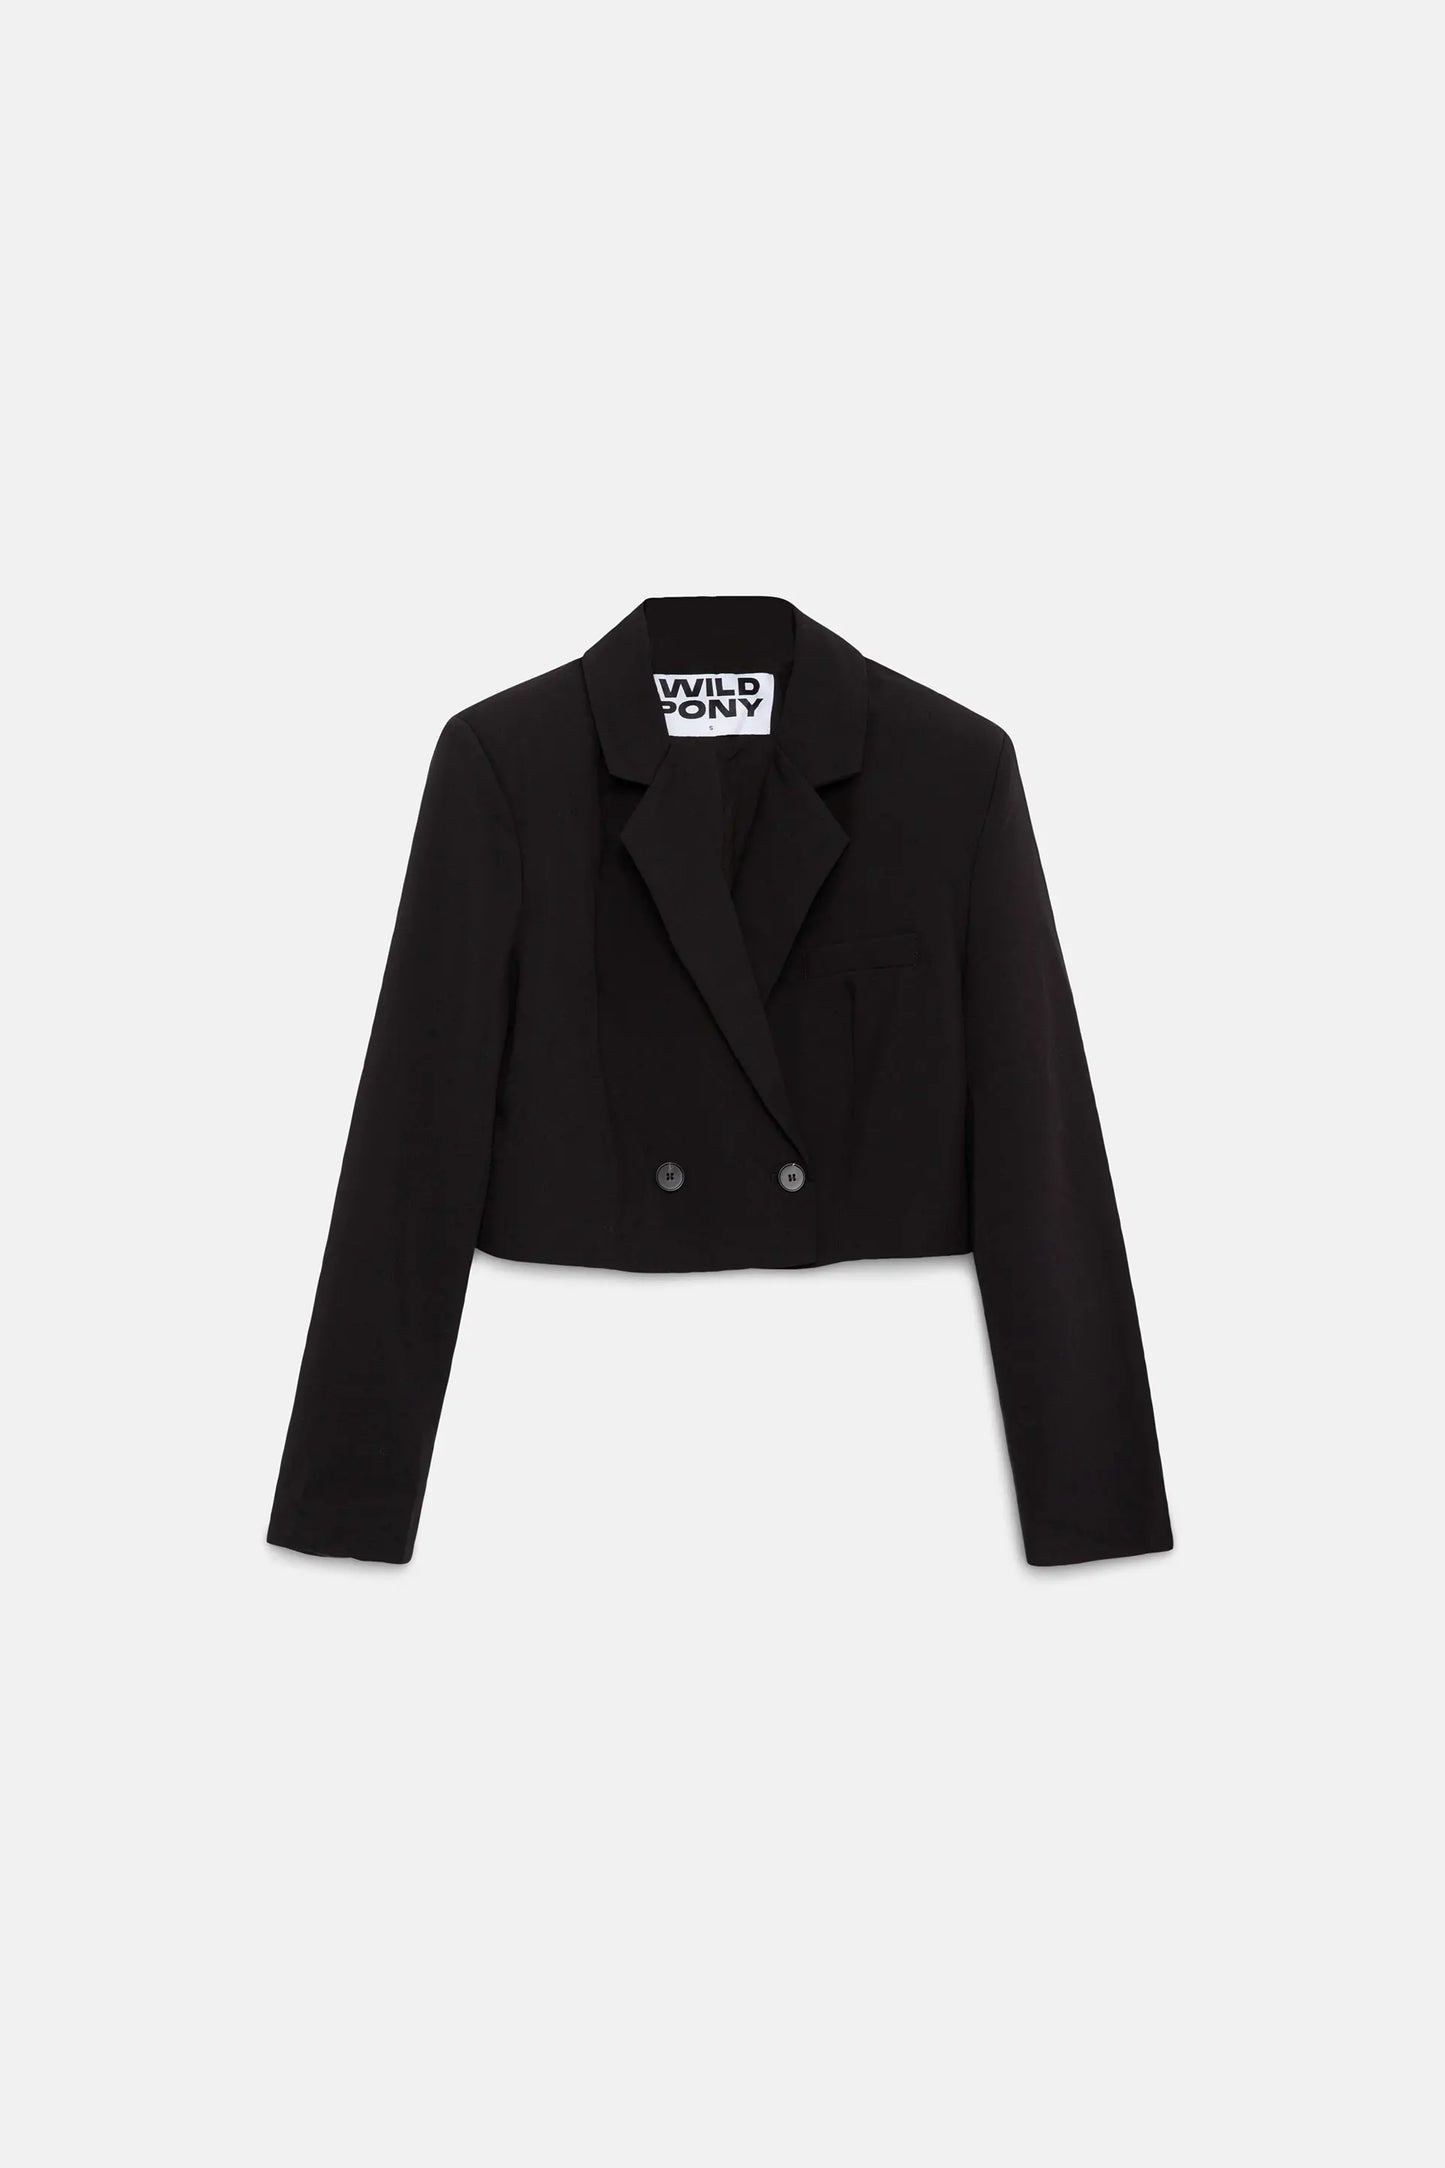 Short black suit blazer